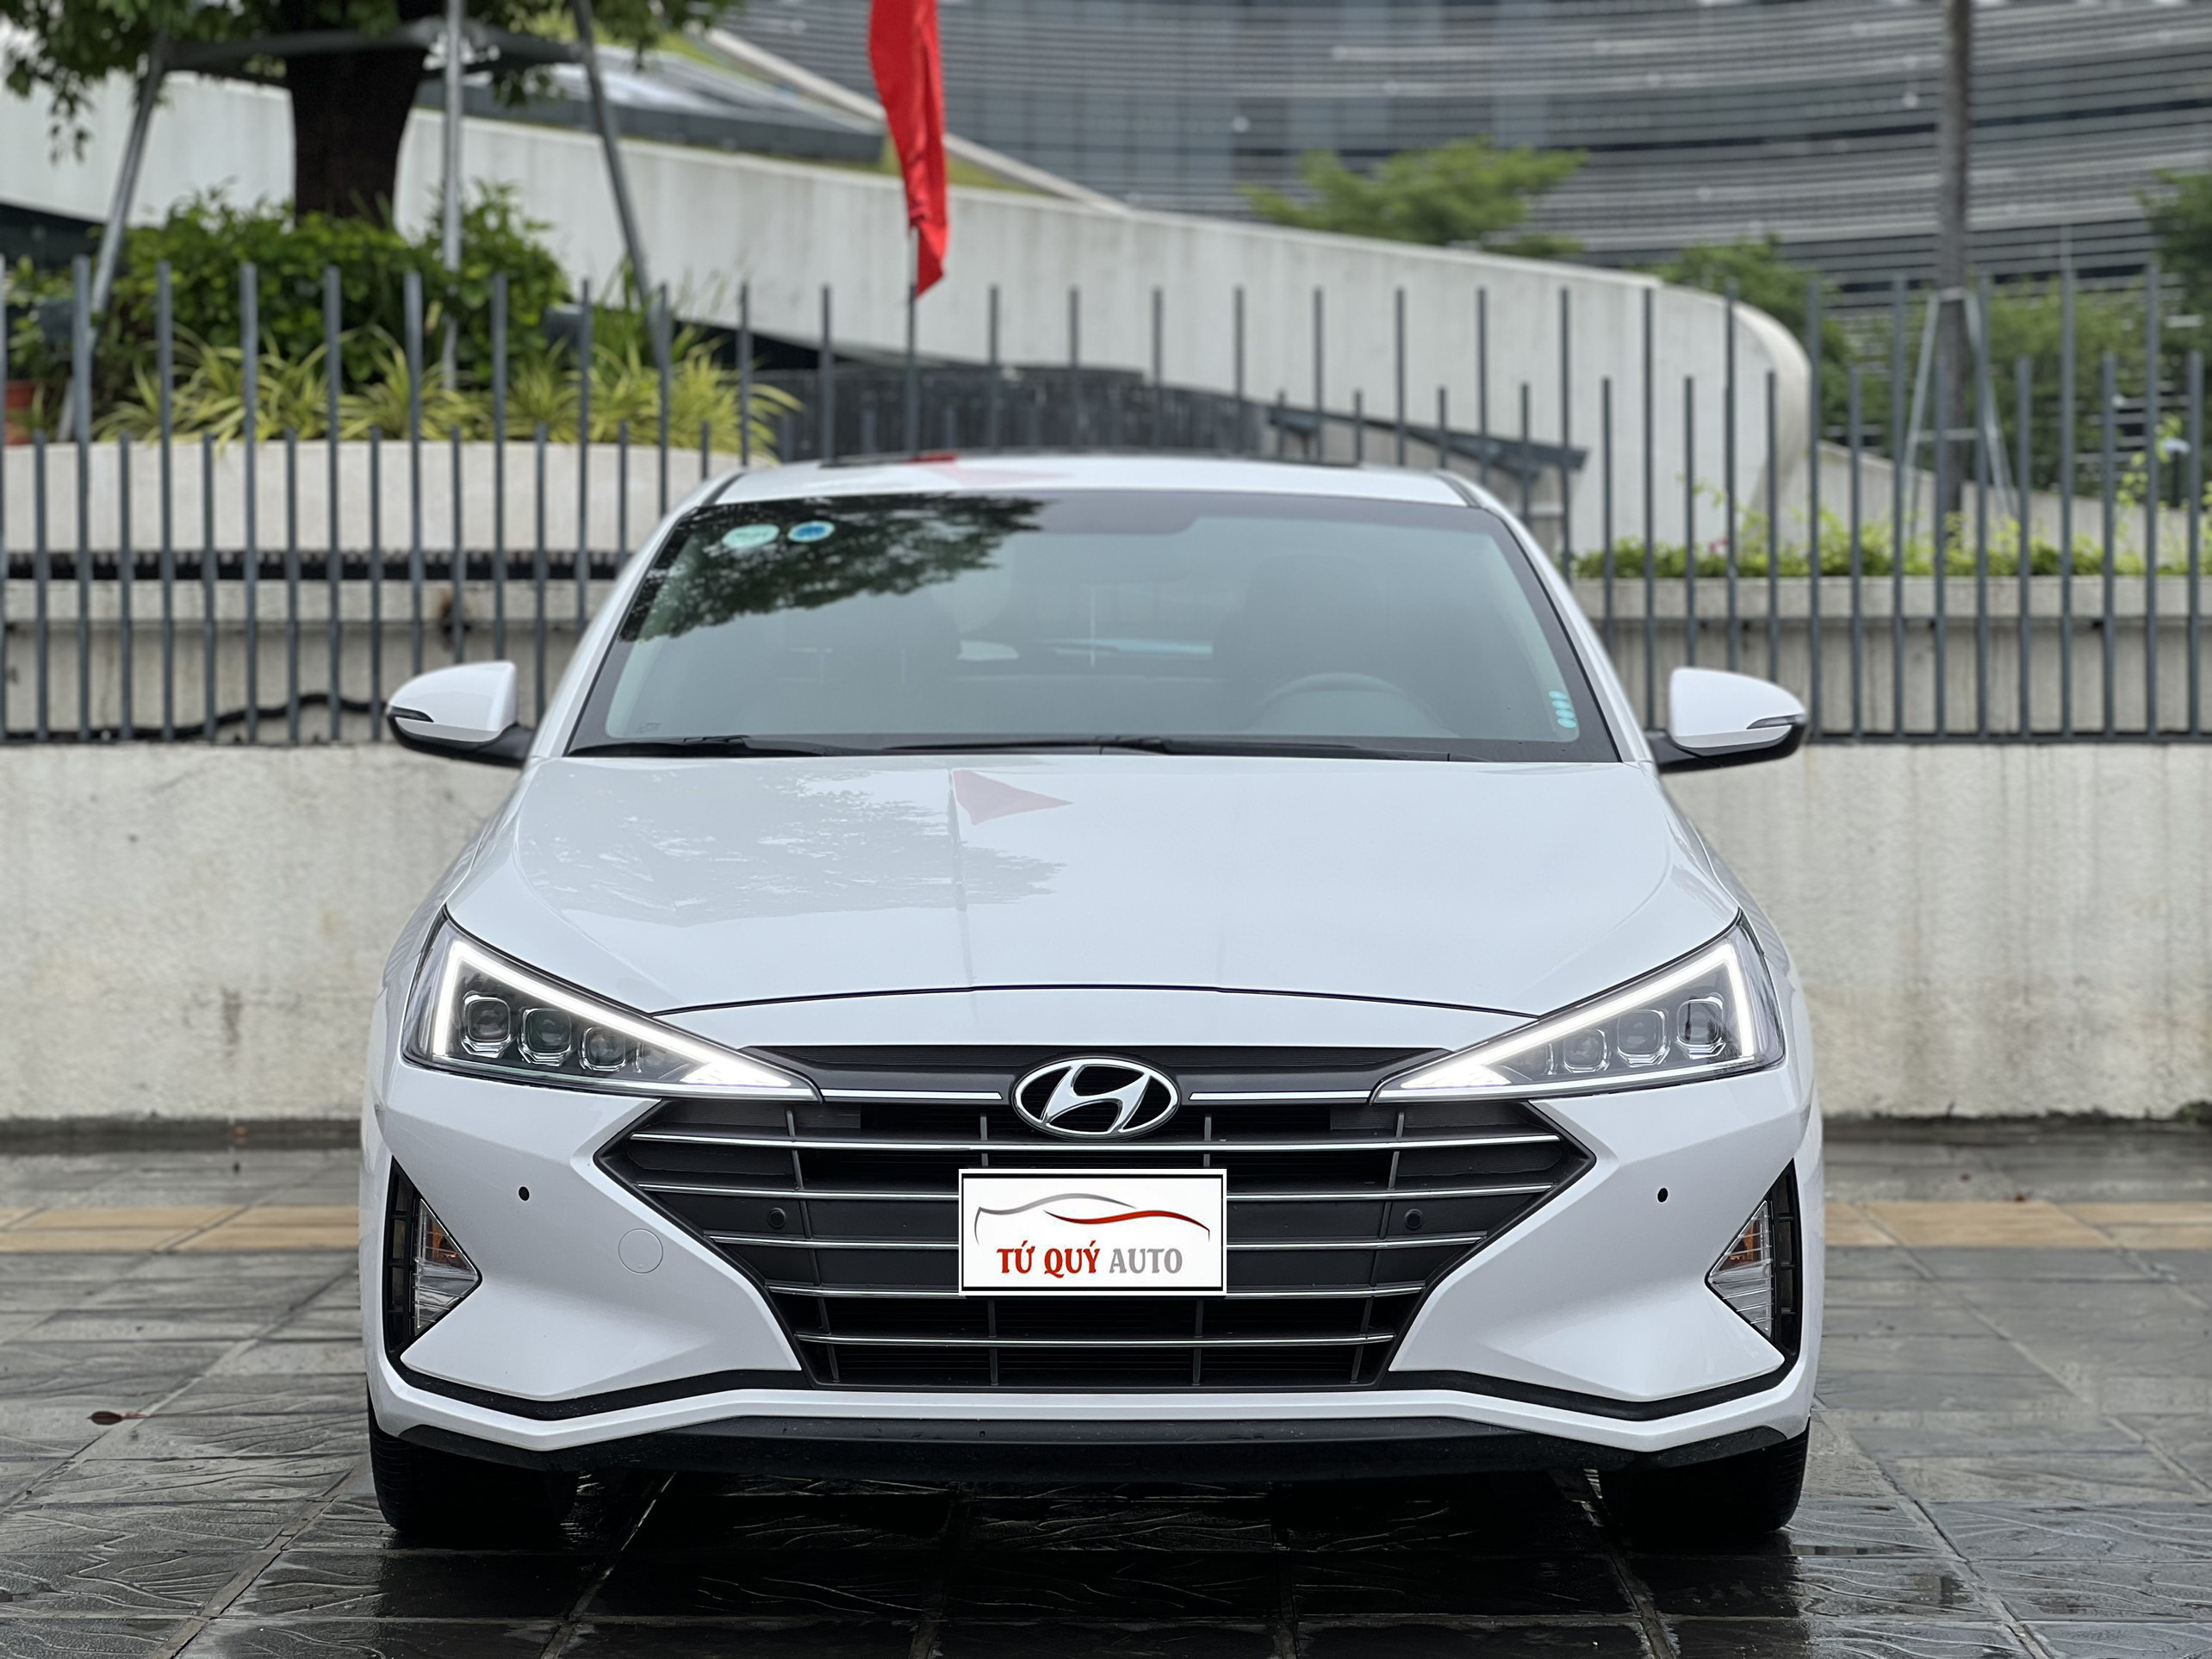 Giá xe Hyundai Elantra 2020 khuyến mãi hấp dẫn giao ngay